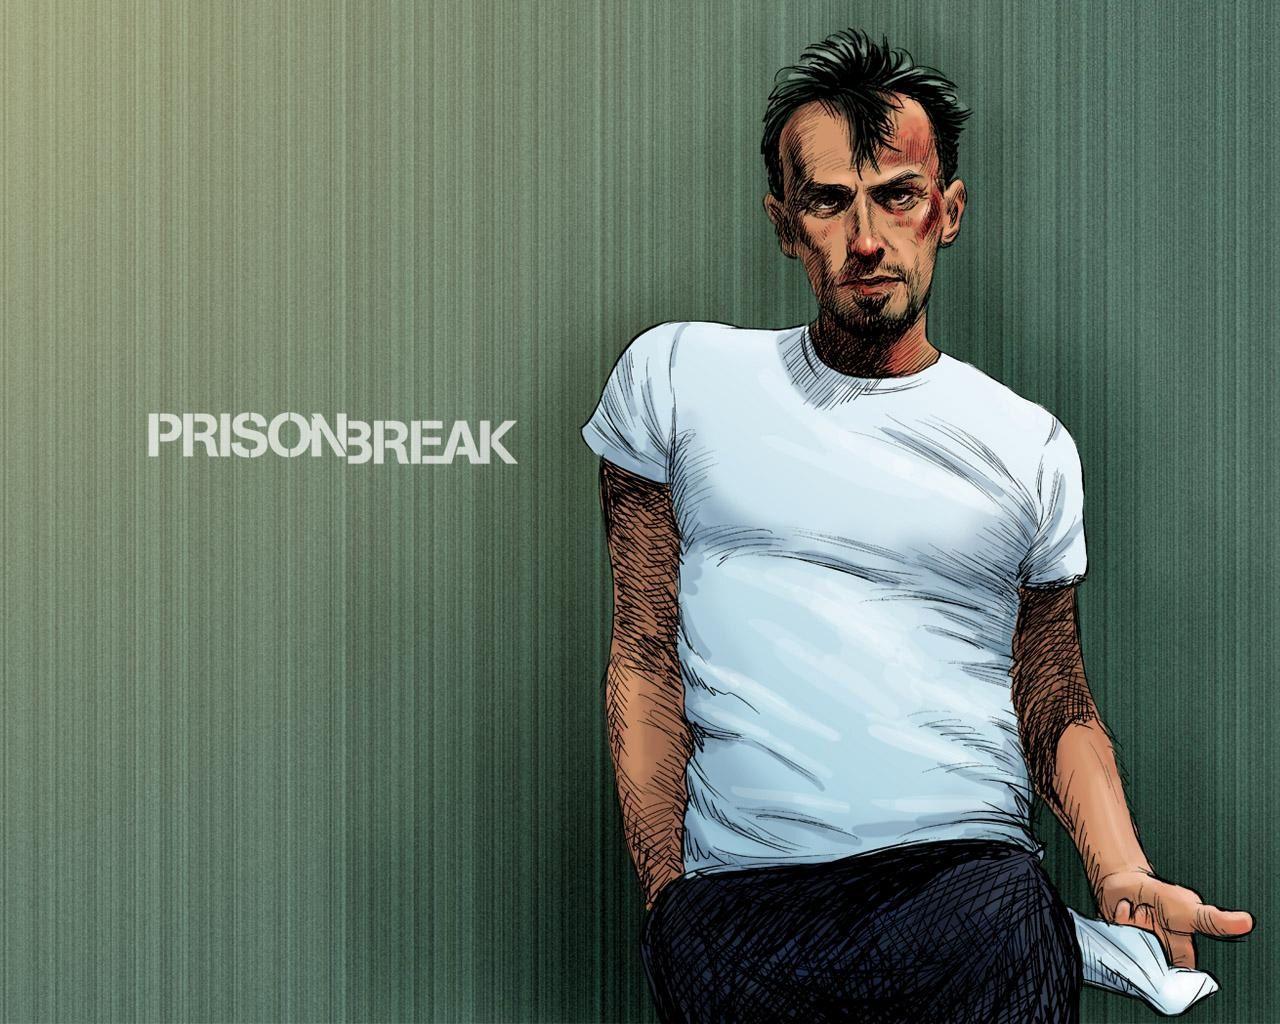 prison_break_hd. Prison Break HD Wallpaper. Prison